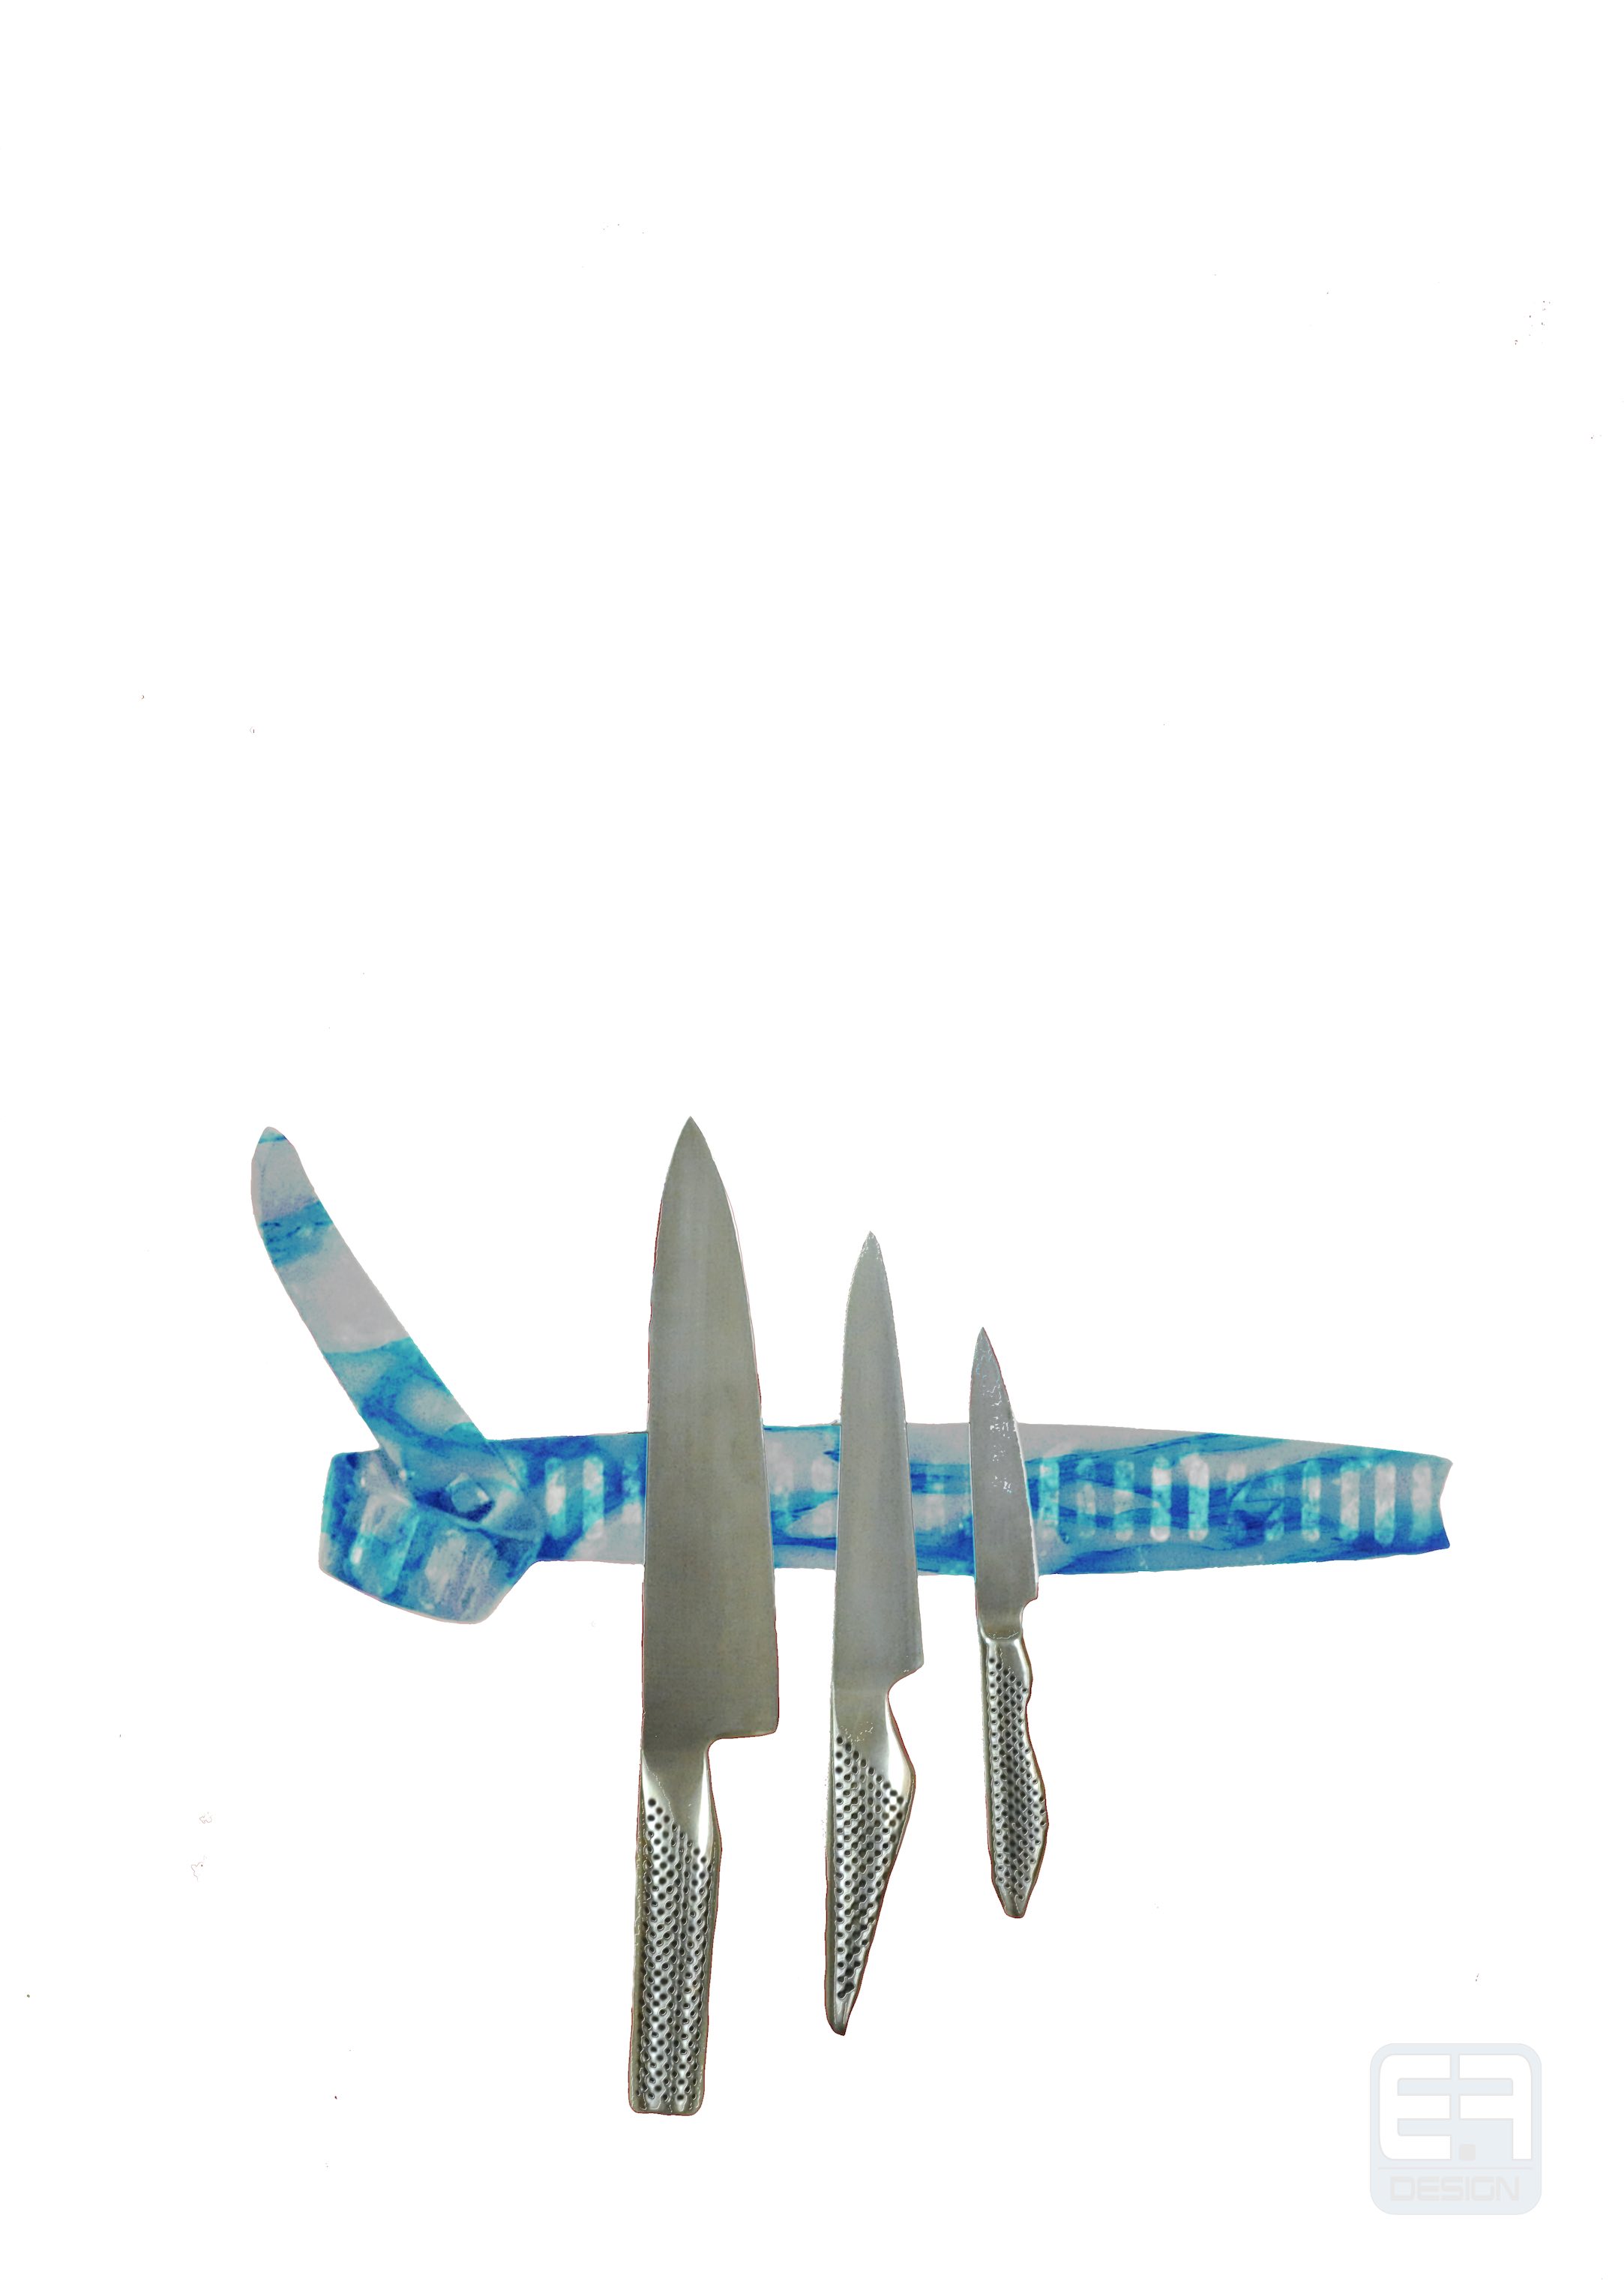 Knife rack design concept 